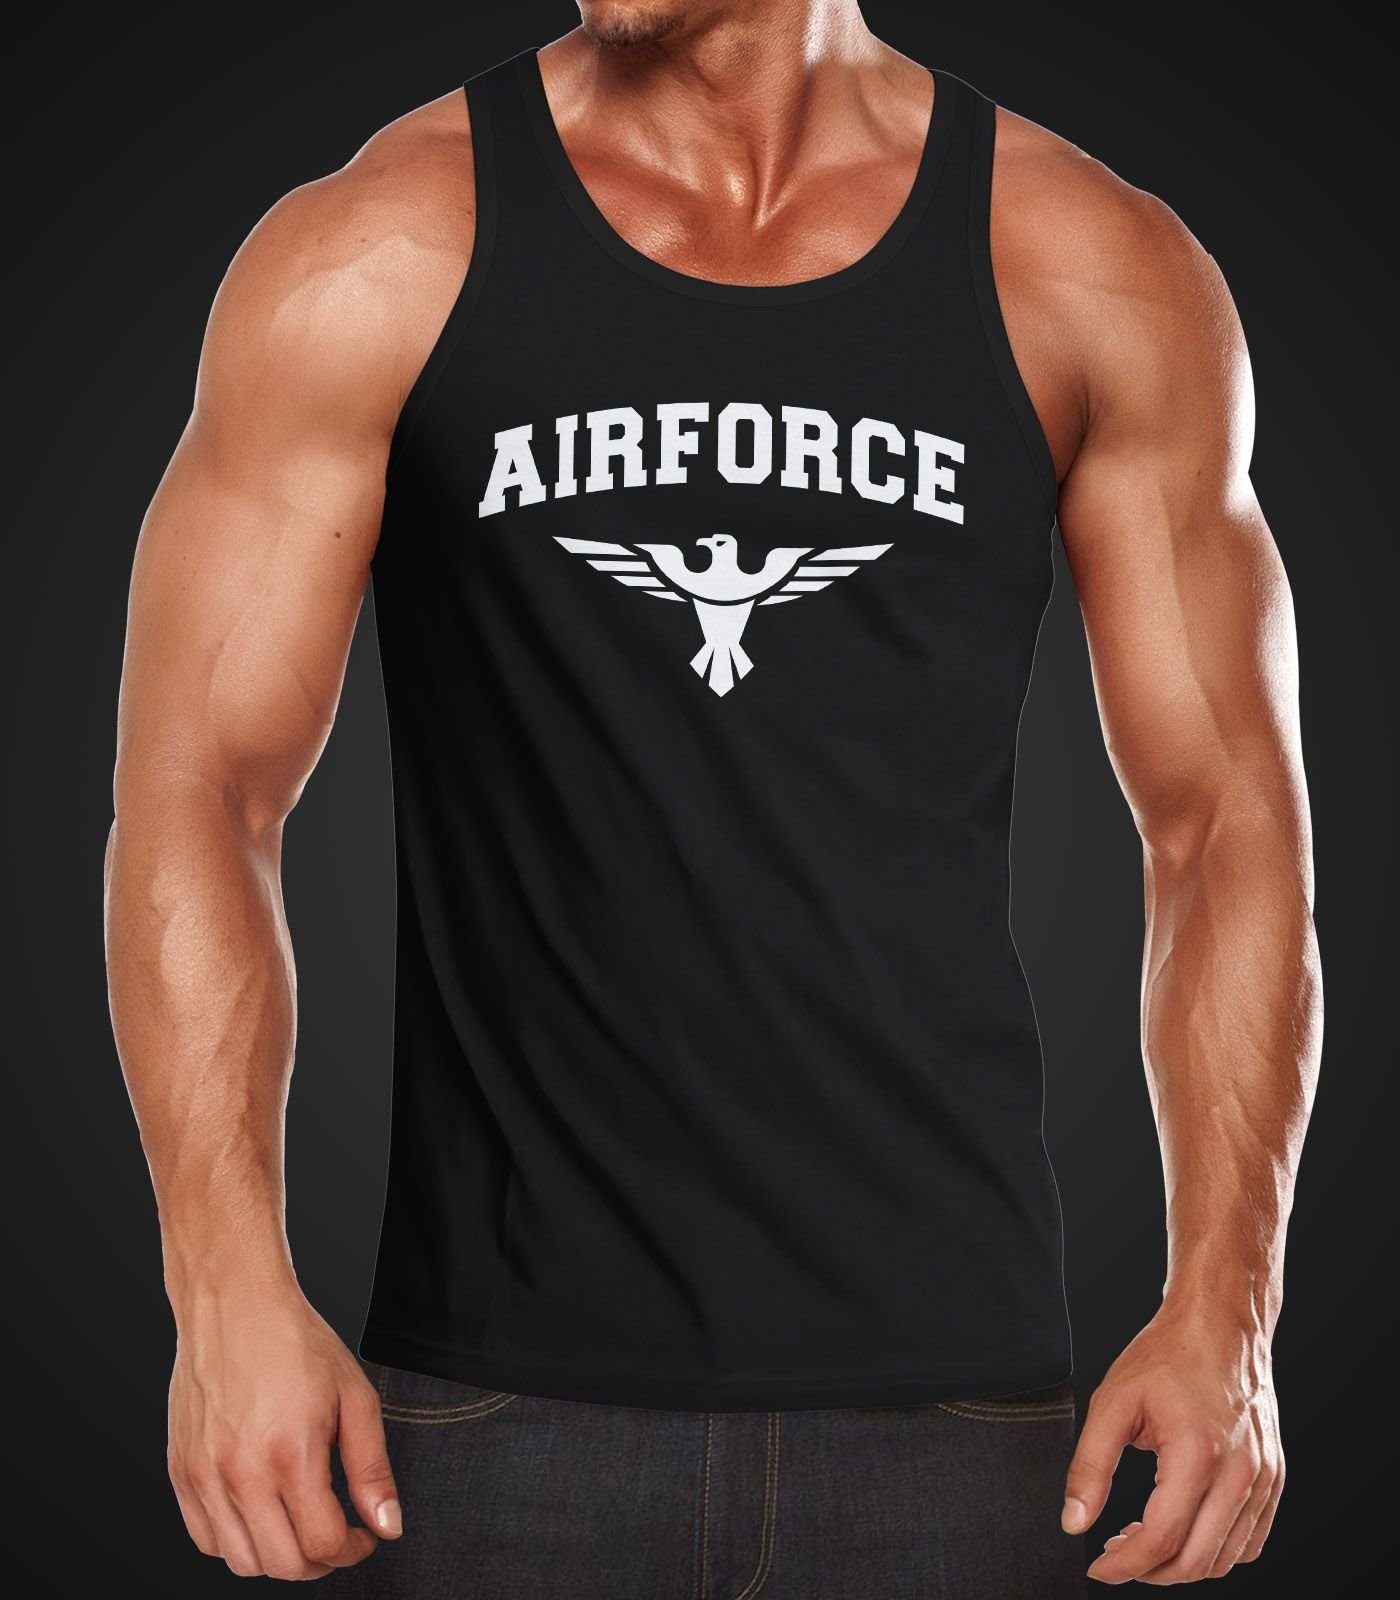 Neverless Tanktop Herren Tank-Top Airforce Army Muscle schwarz Shirt Muskelshirt Neverless® Militär US mit Adler Print